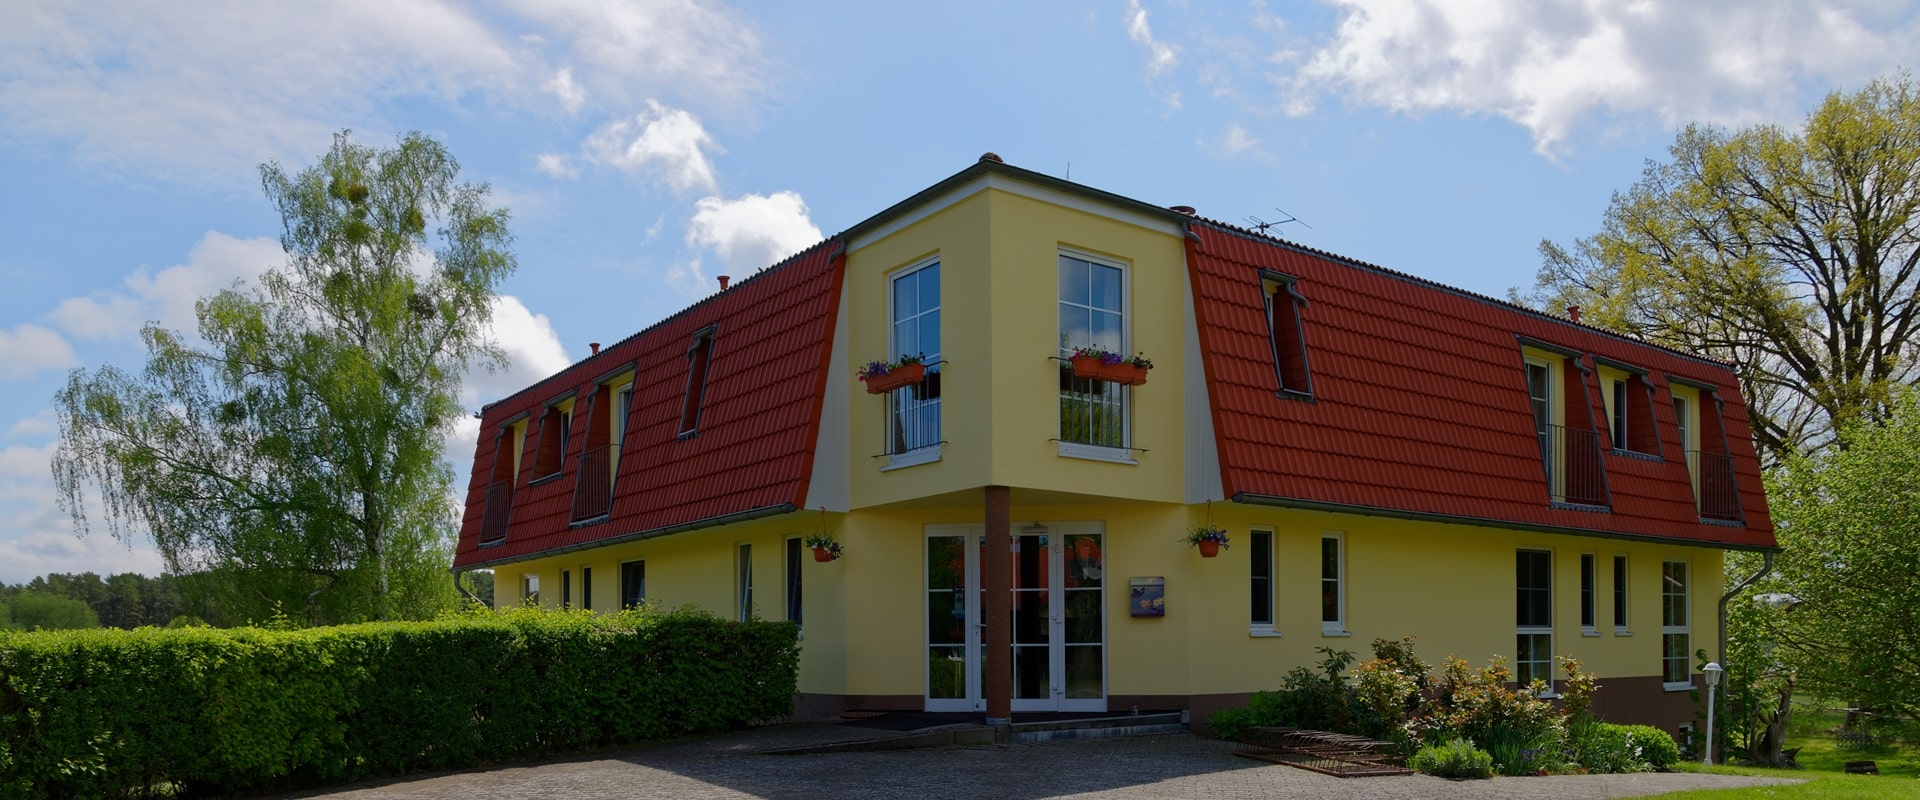 Landhaus Mirow in Peetsch am See